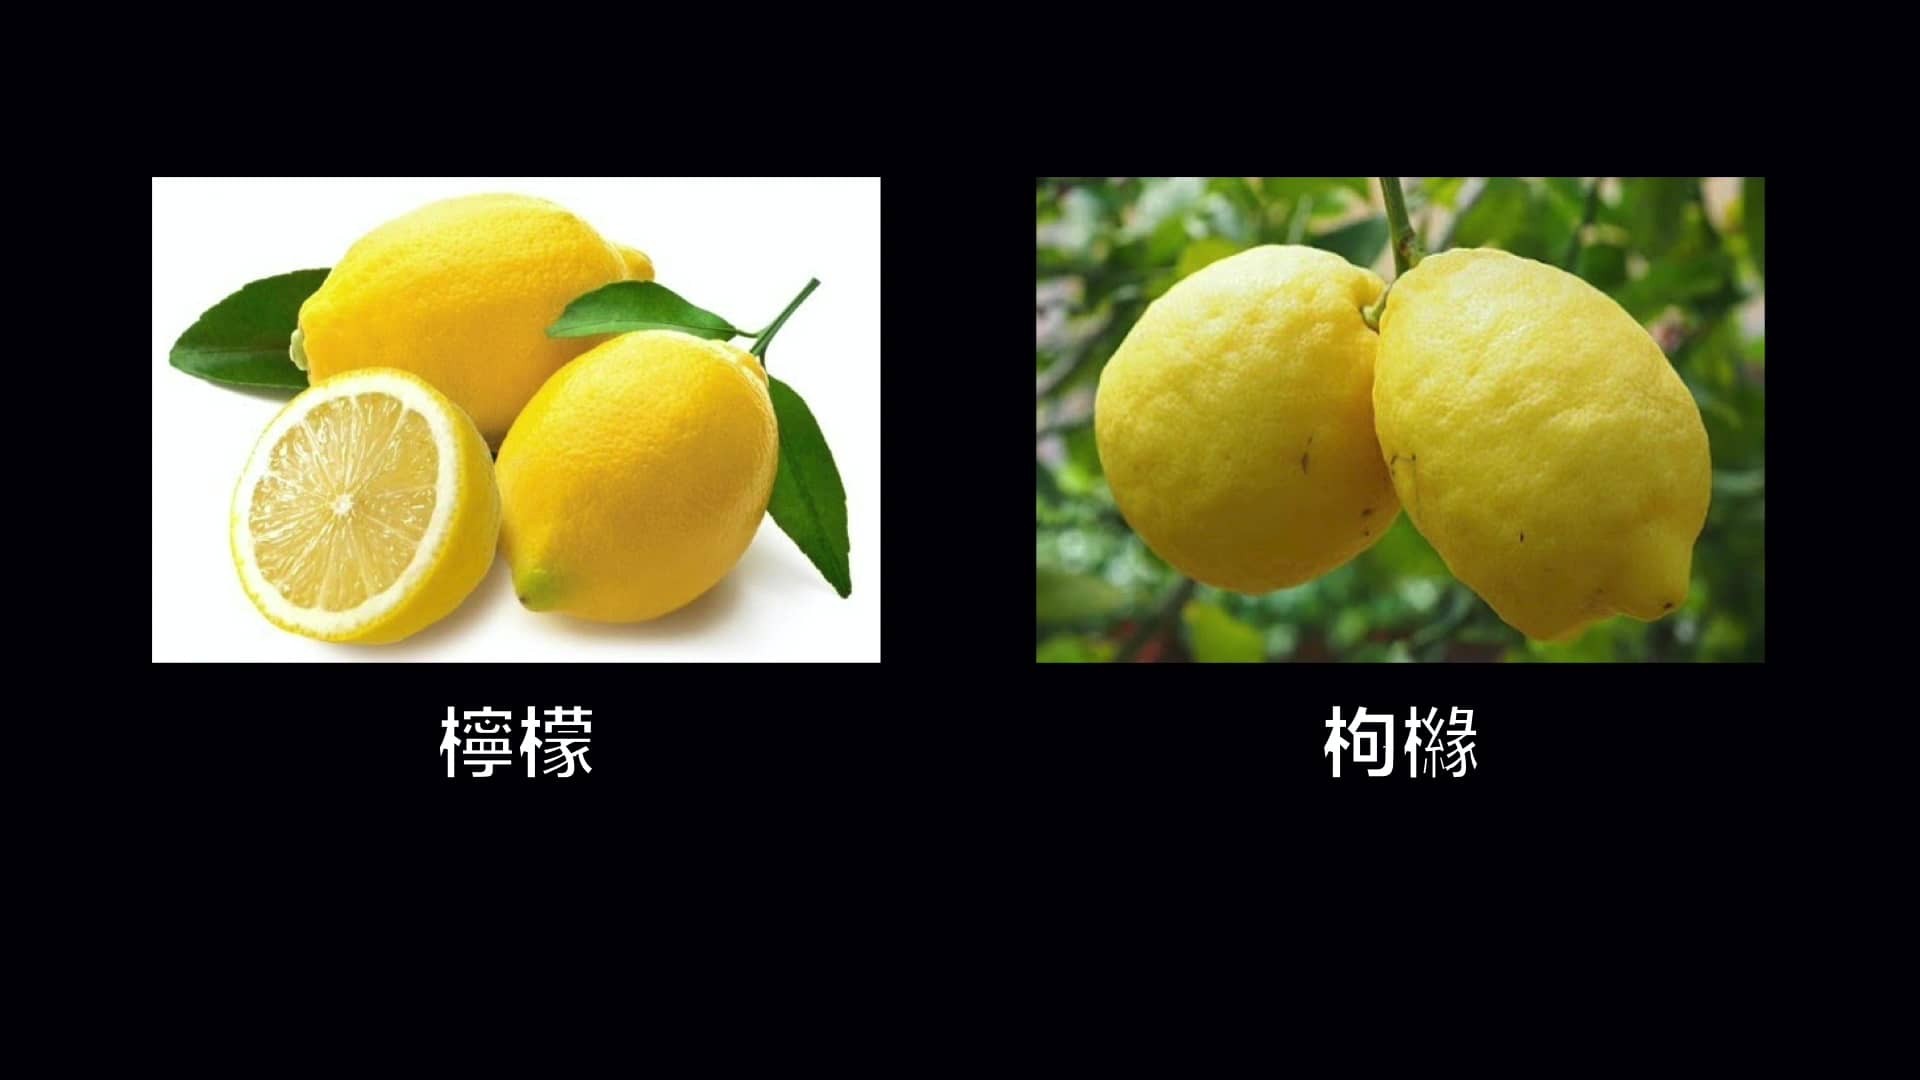 為什麼全世界的檸檬都讀Lemon？這背後有一個刻在8號染色體上的上古故事……|自說自話的總裁